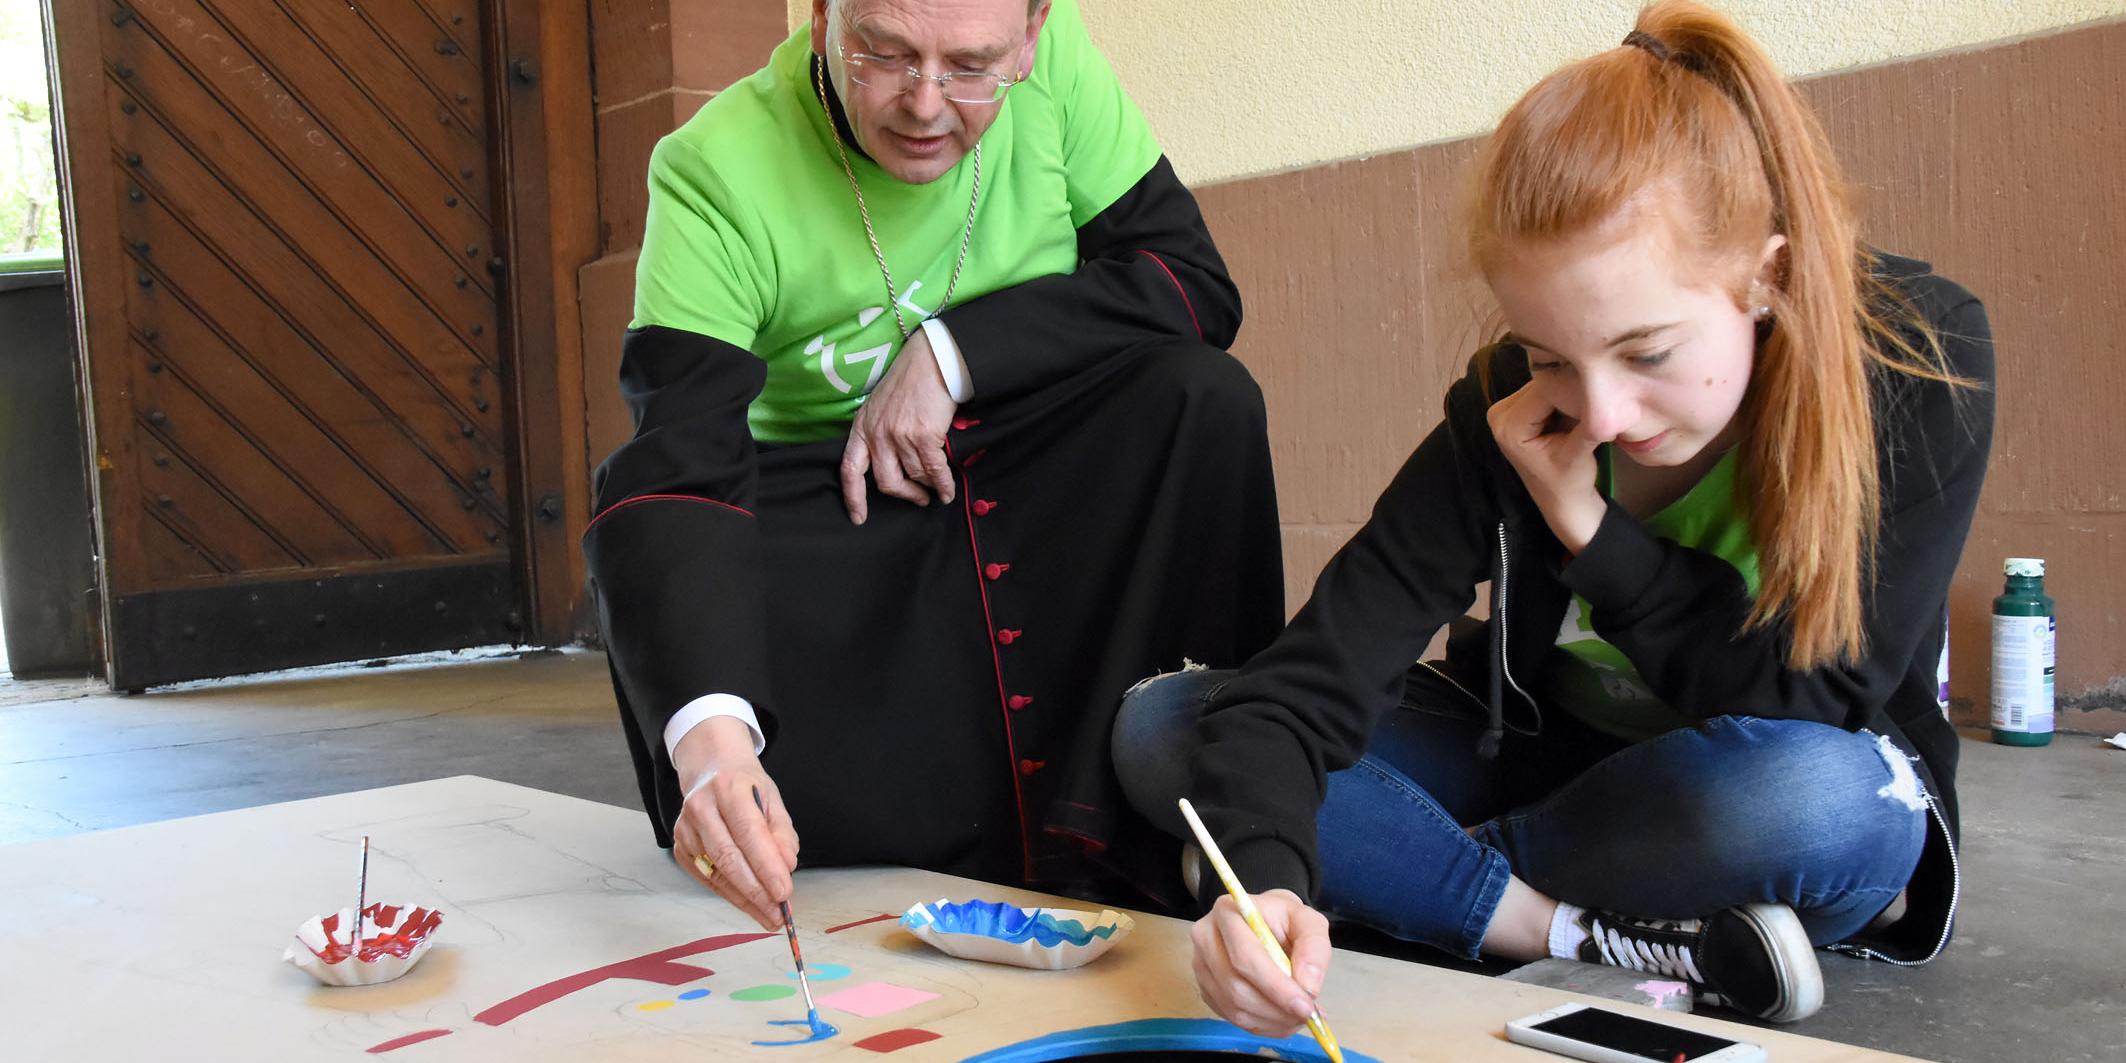 Weihbischof Robert Brahm hat sich bei seinem Besuch selbst einen Pinsel geschnappt und den Jugendlichen geholfen. (Foto: Hans Georg Schneider)